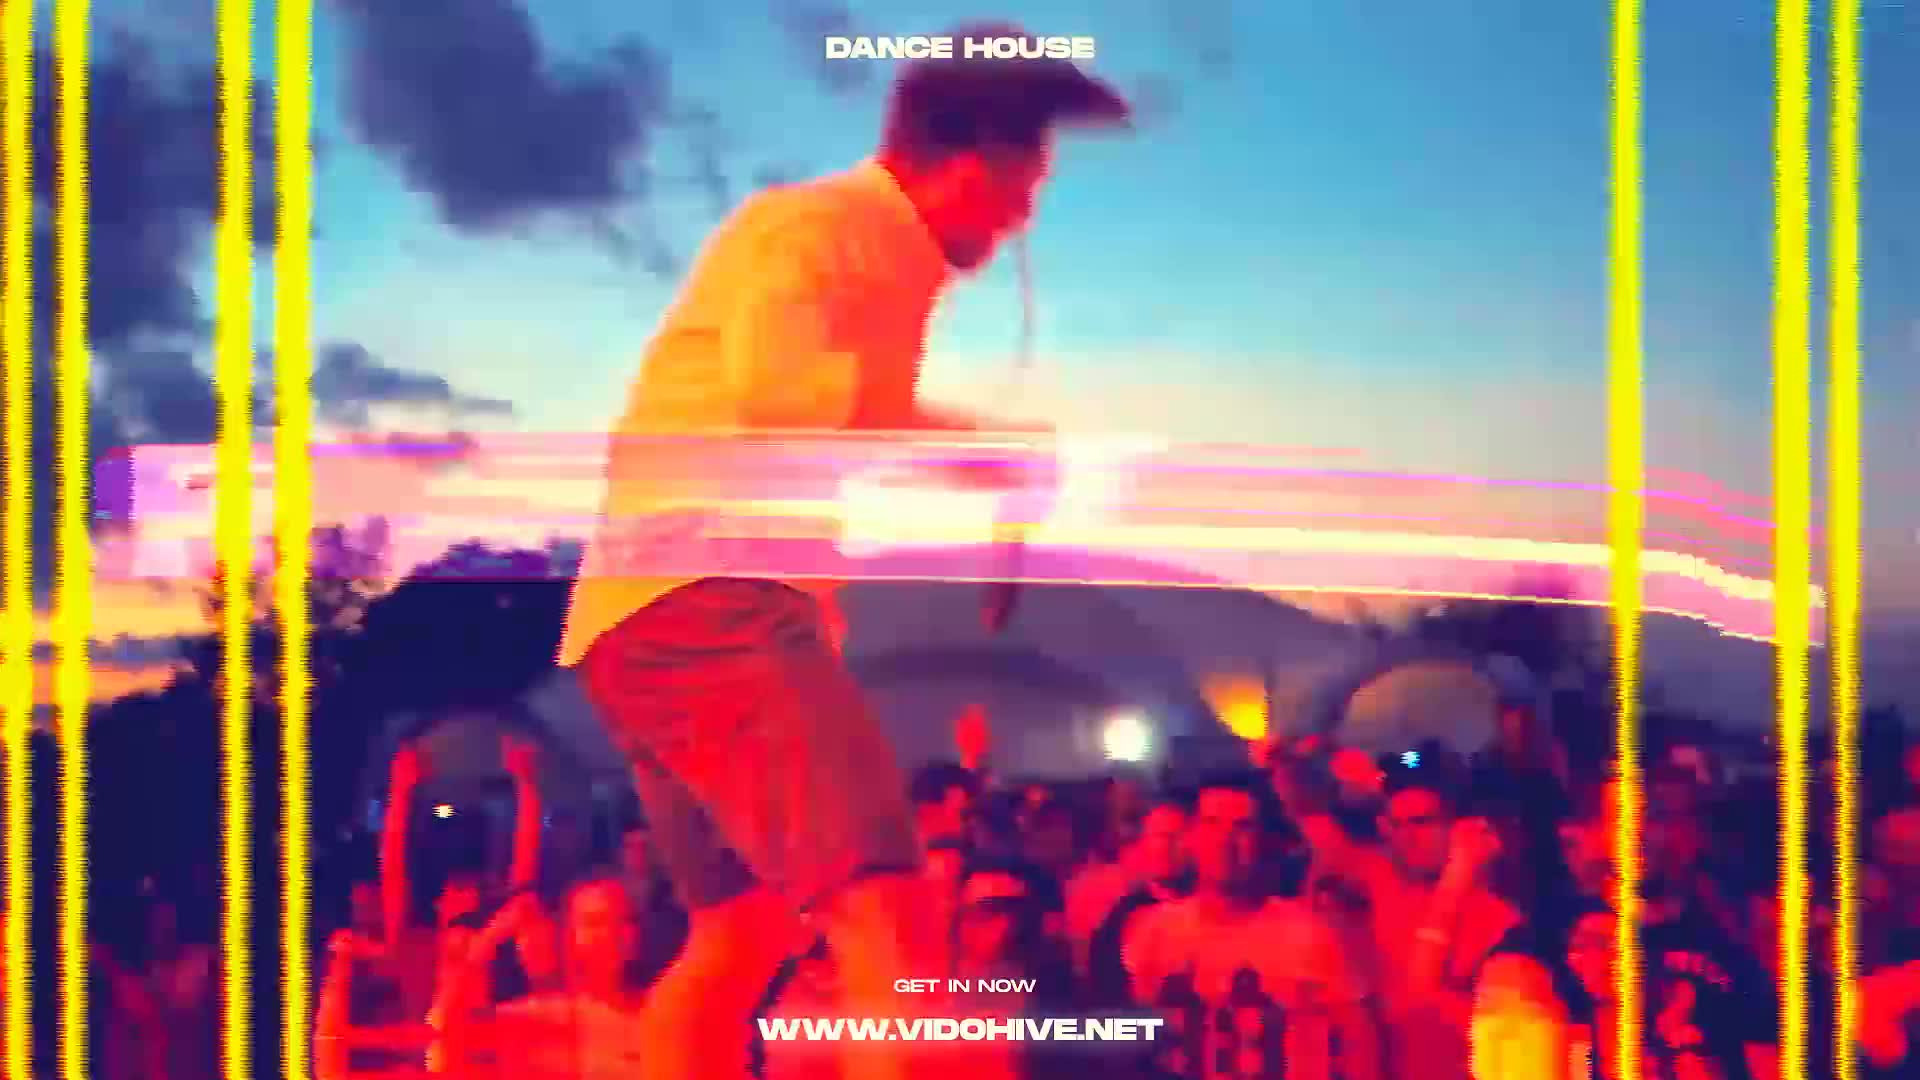 Fire Dance Party Promo Videohive 25891331 Premiere Pro Image 3